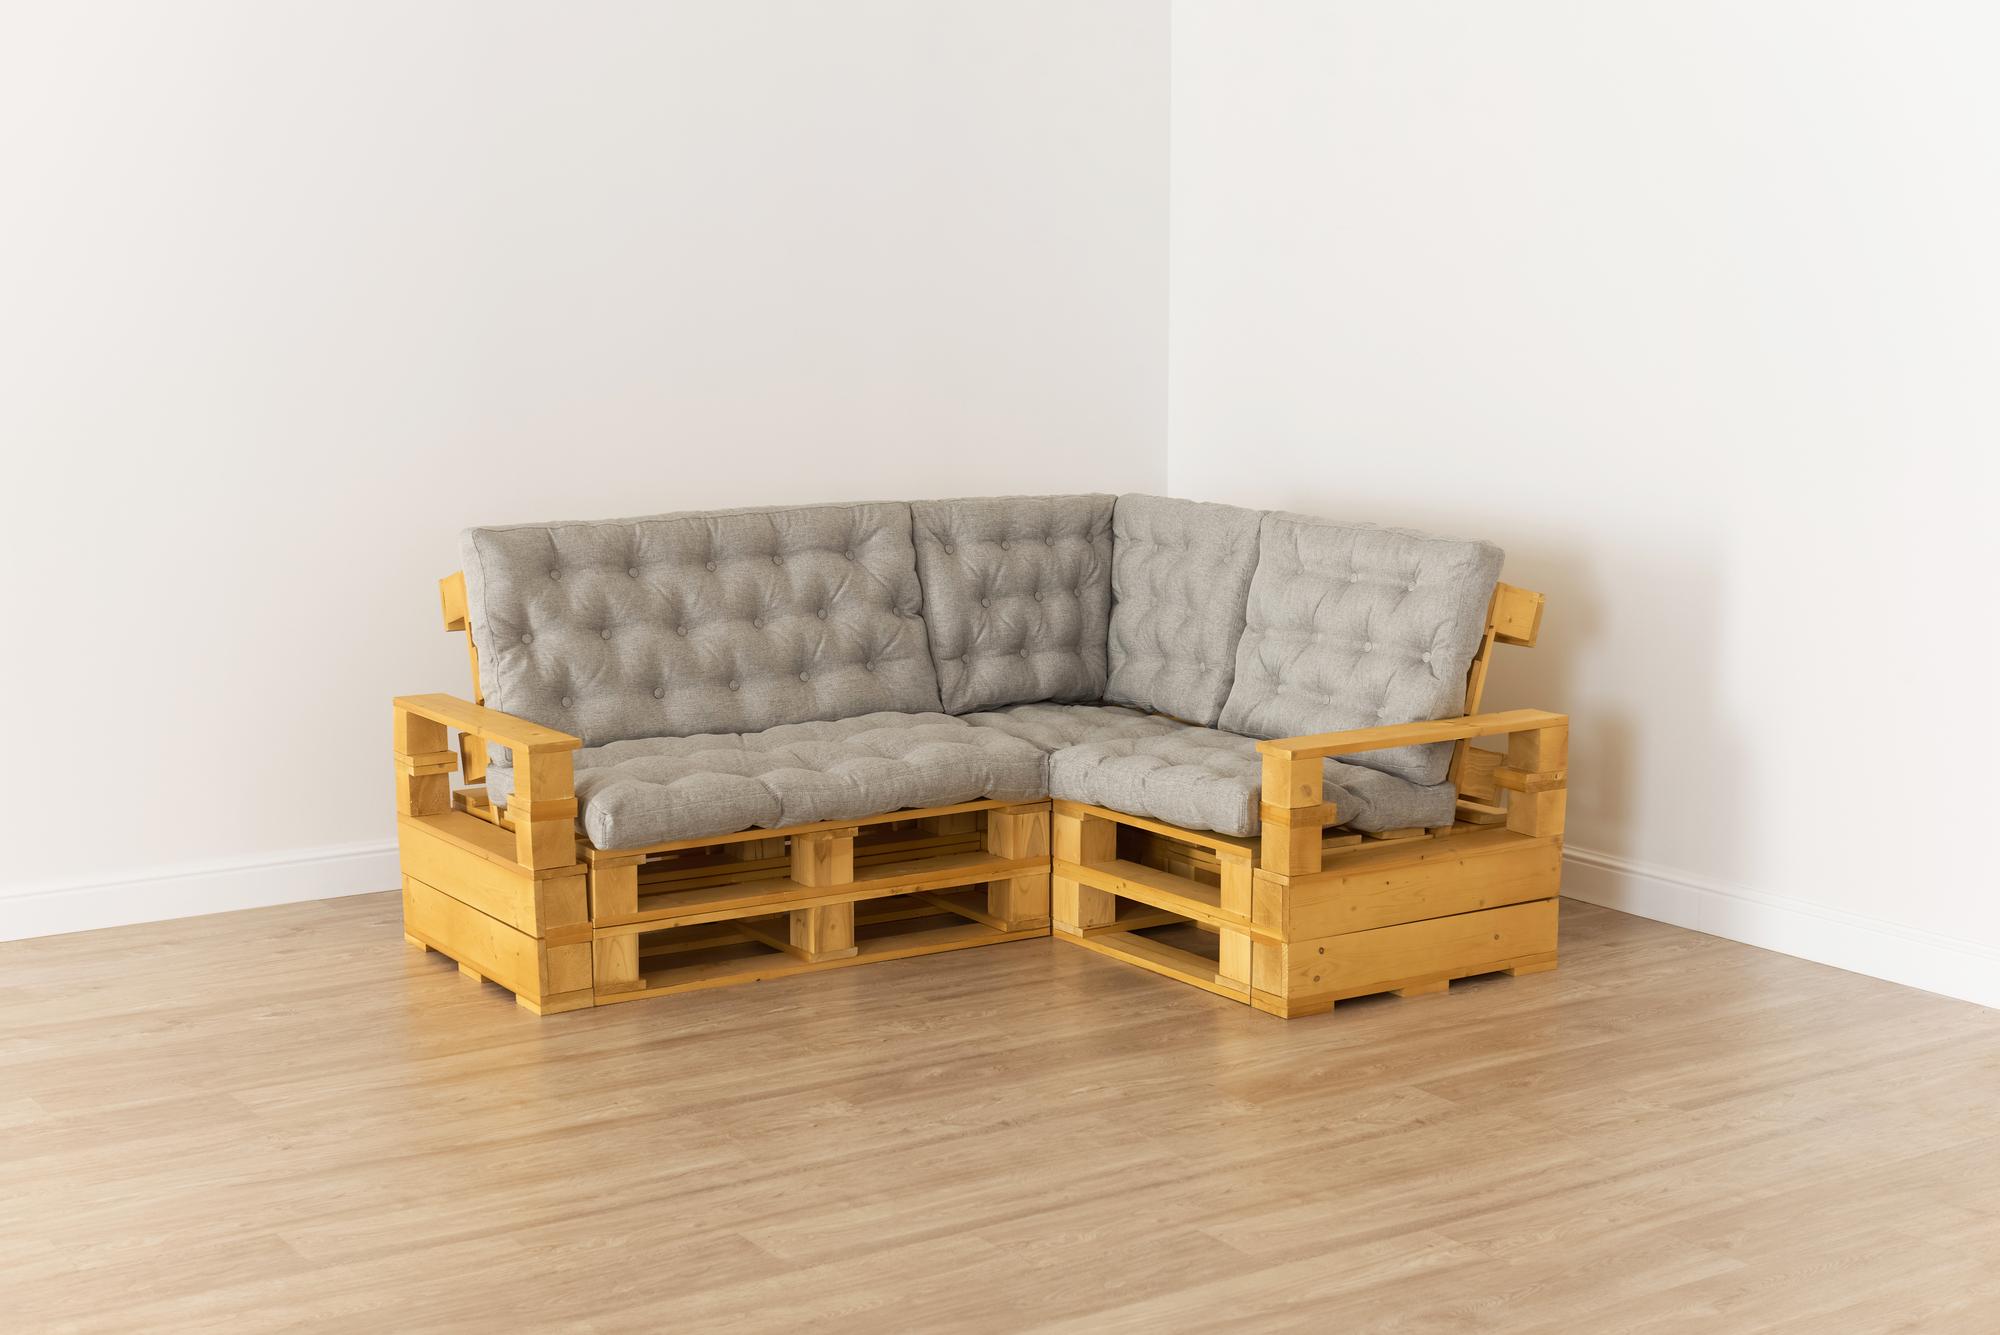 Купить Подлокотник + Диван 70 + угловой диван + диван 110 + подлокотник от производителя “Архитектория” фото №2